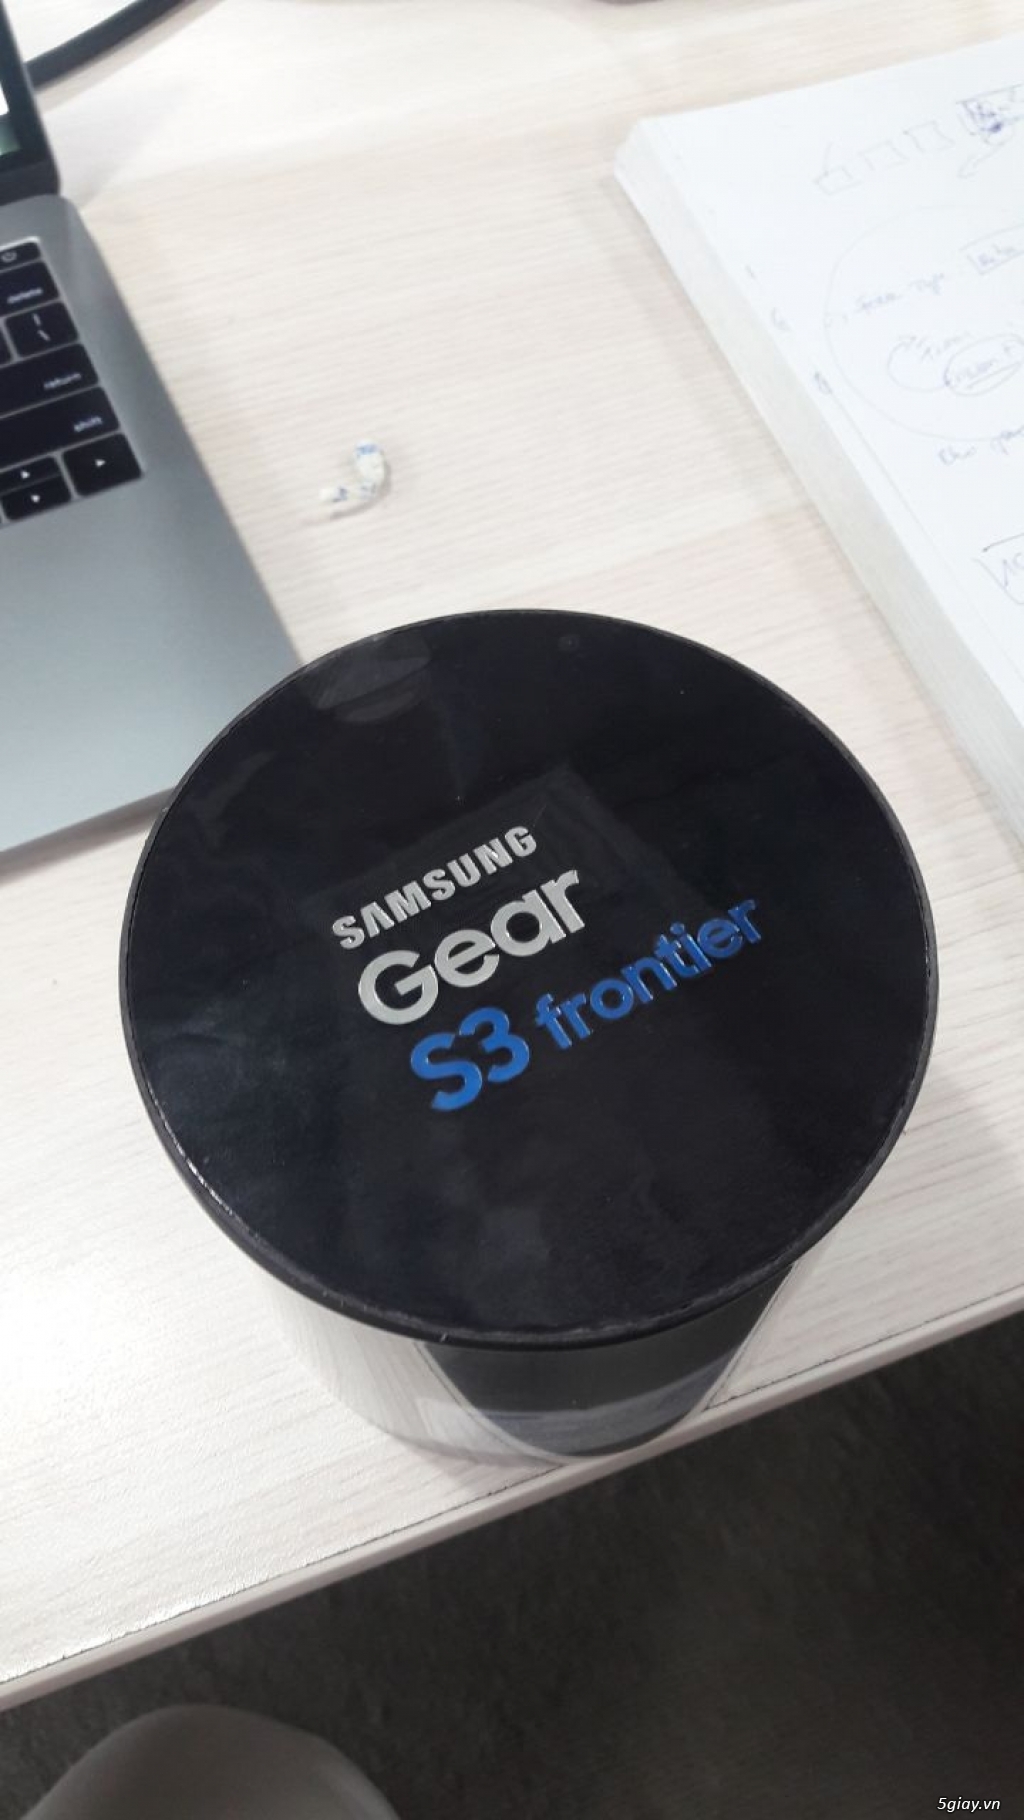 Samsung Gear S3 Frontier (Đen)